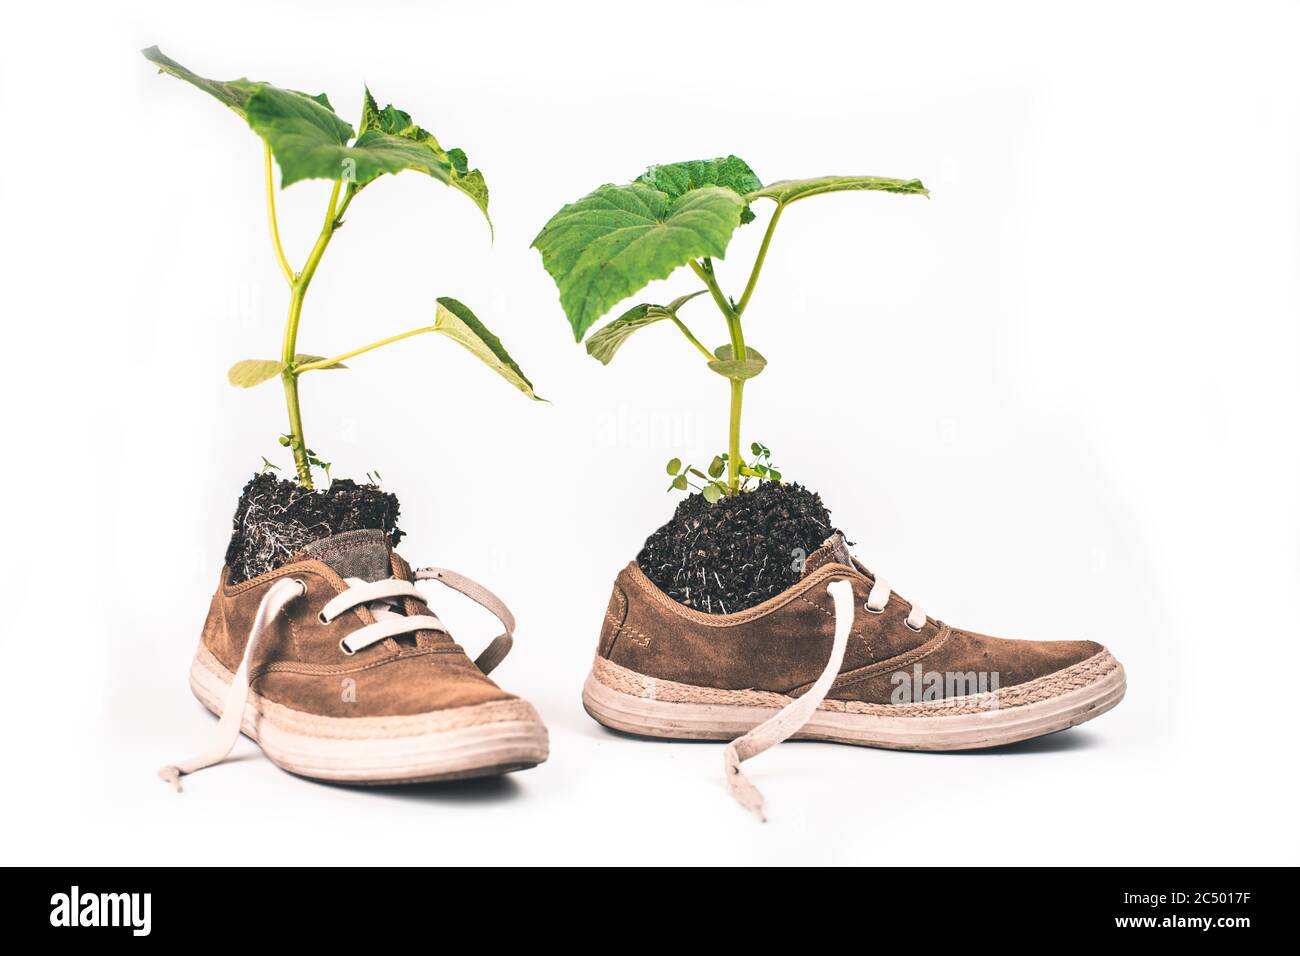 Flor verde plantada en botas. La planta crece a partir de zapatillas de deporte Foto de stock